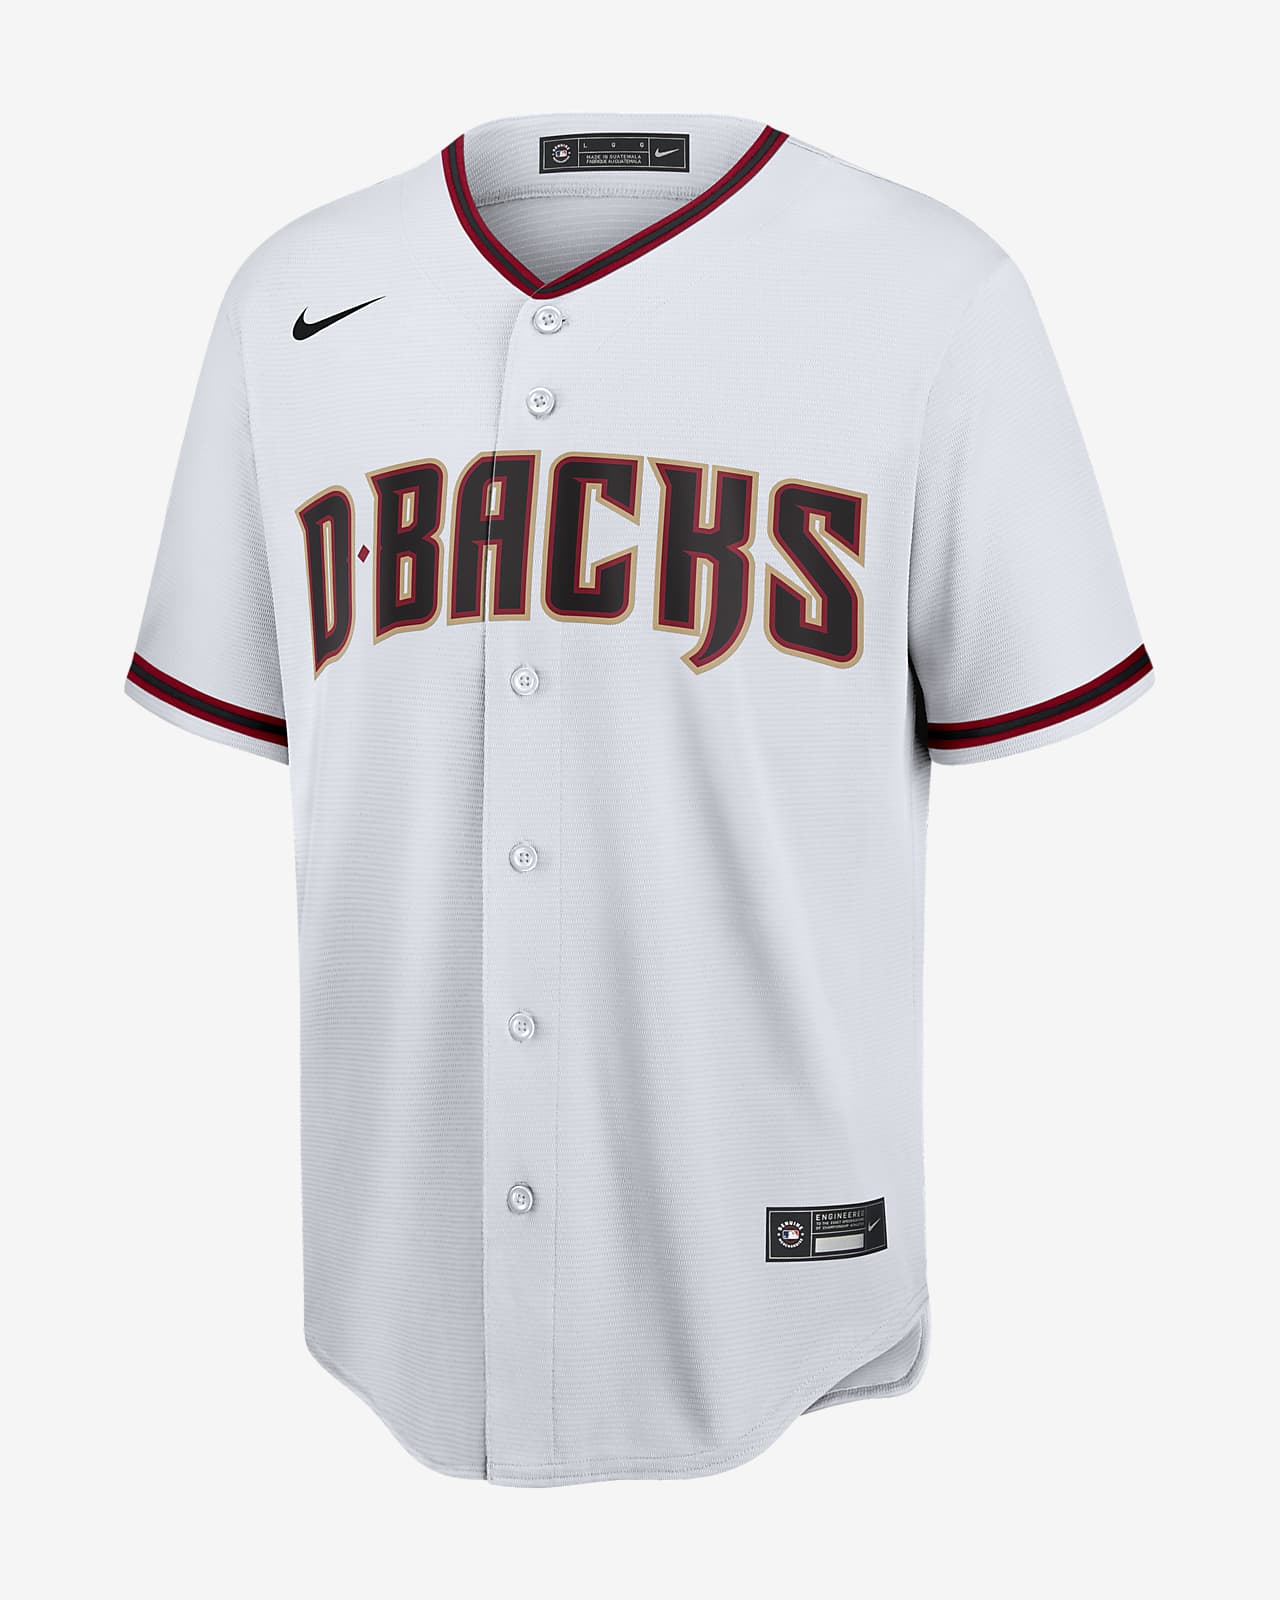 arizona baseball jersey